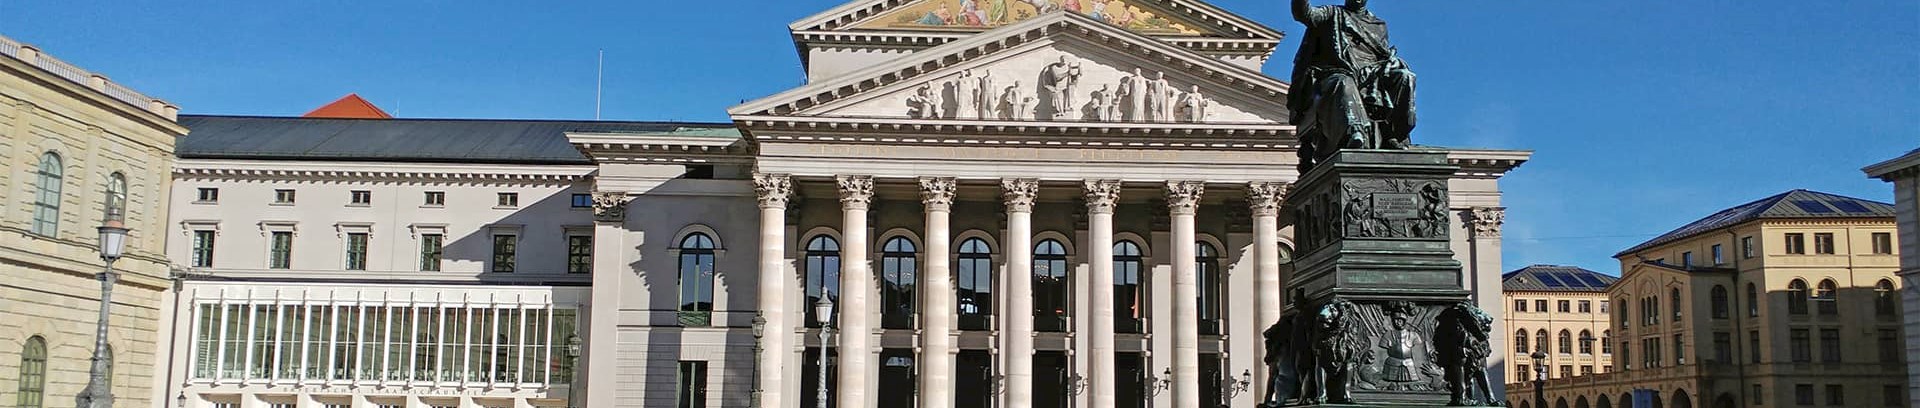 Bayerische Staatsoper i München. Operatur med FOF Aarhus.